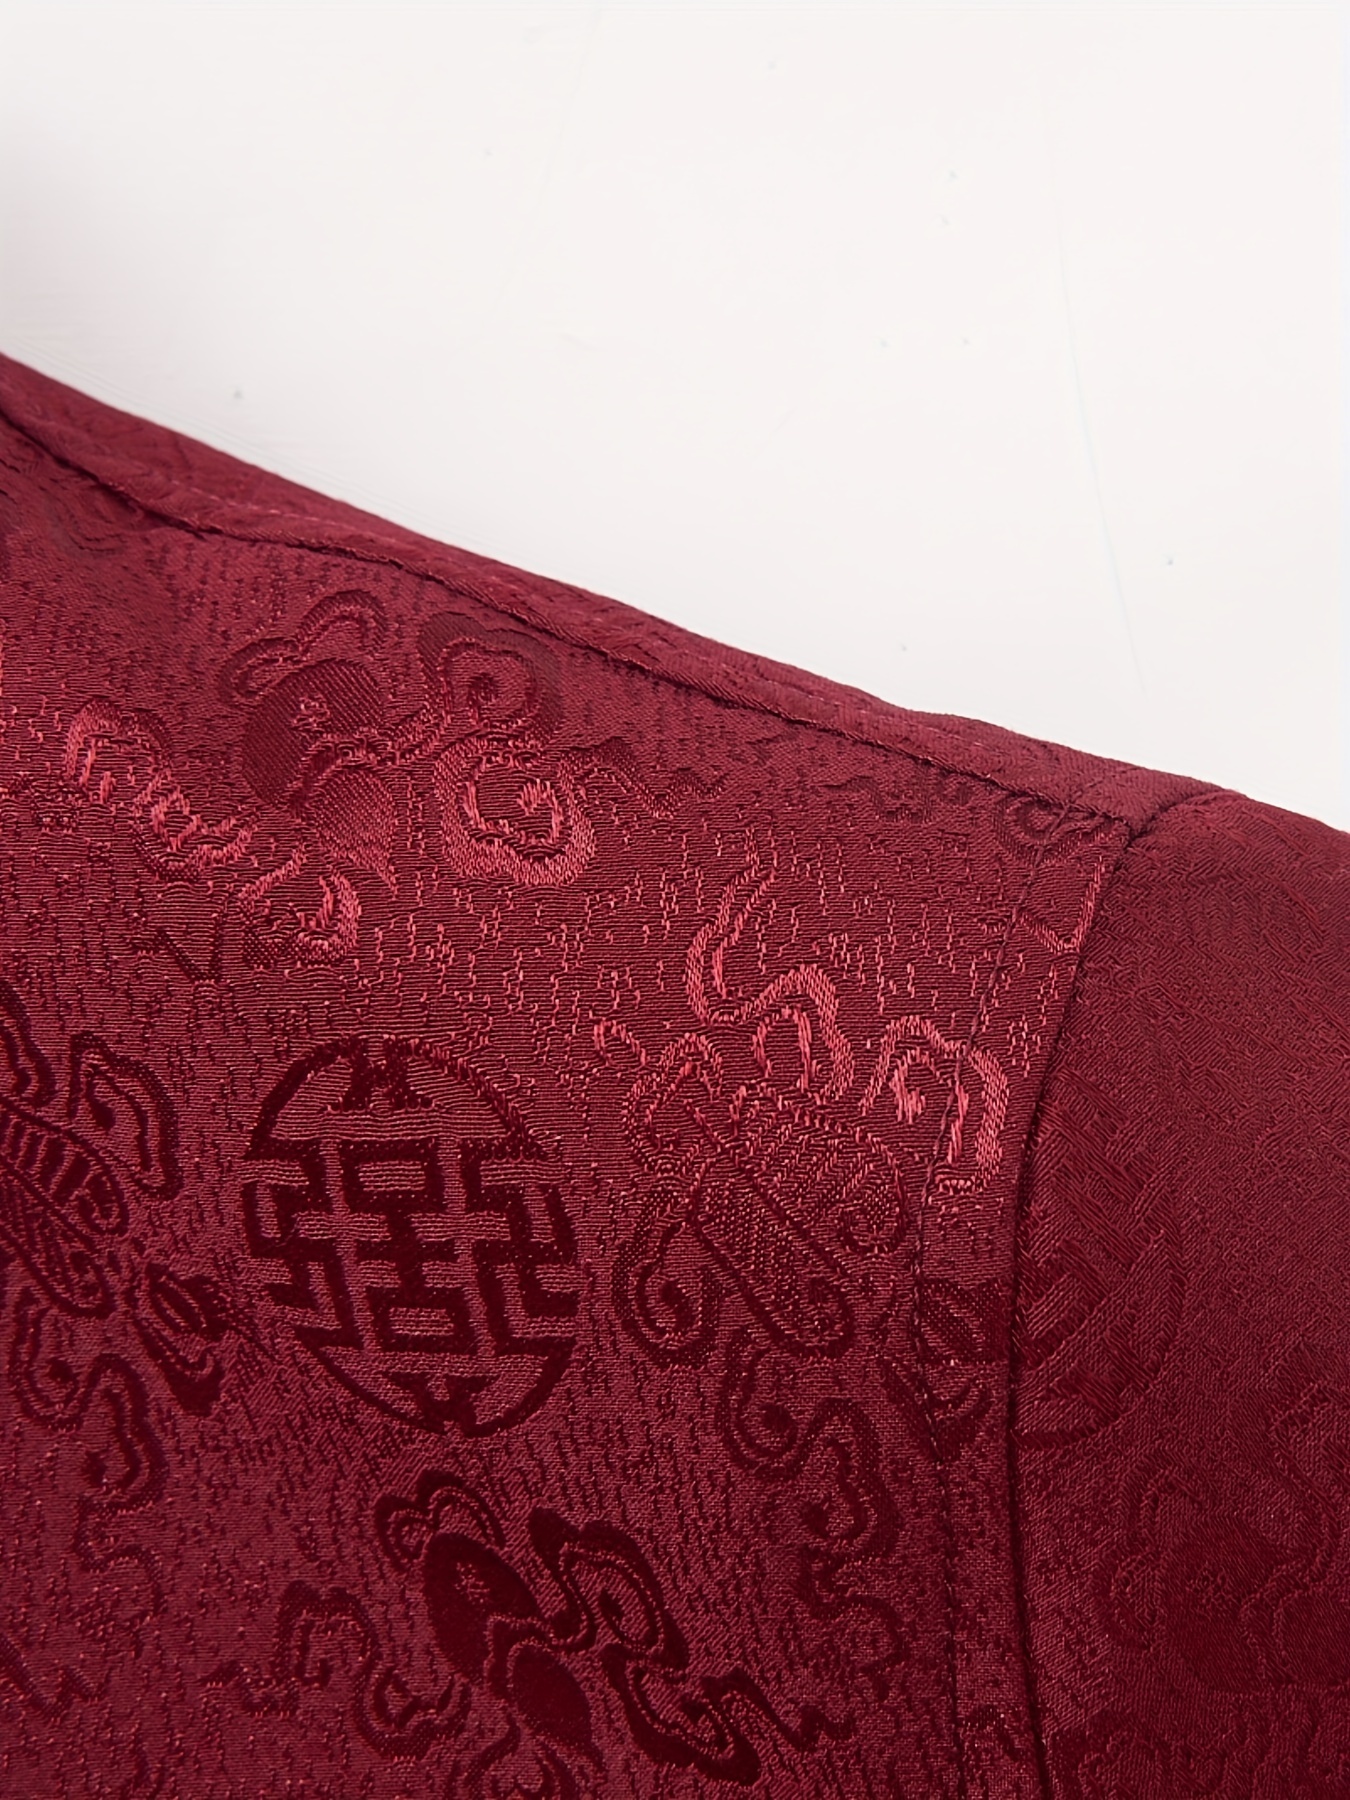 Giacca lunga da uomo in stile cinese della dinastia Tang. Giacca monopetto  in cotone e lino e cappotto, giacche nere con ricamo gru bianca